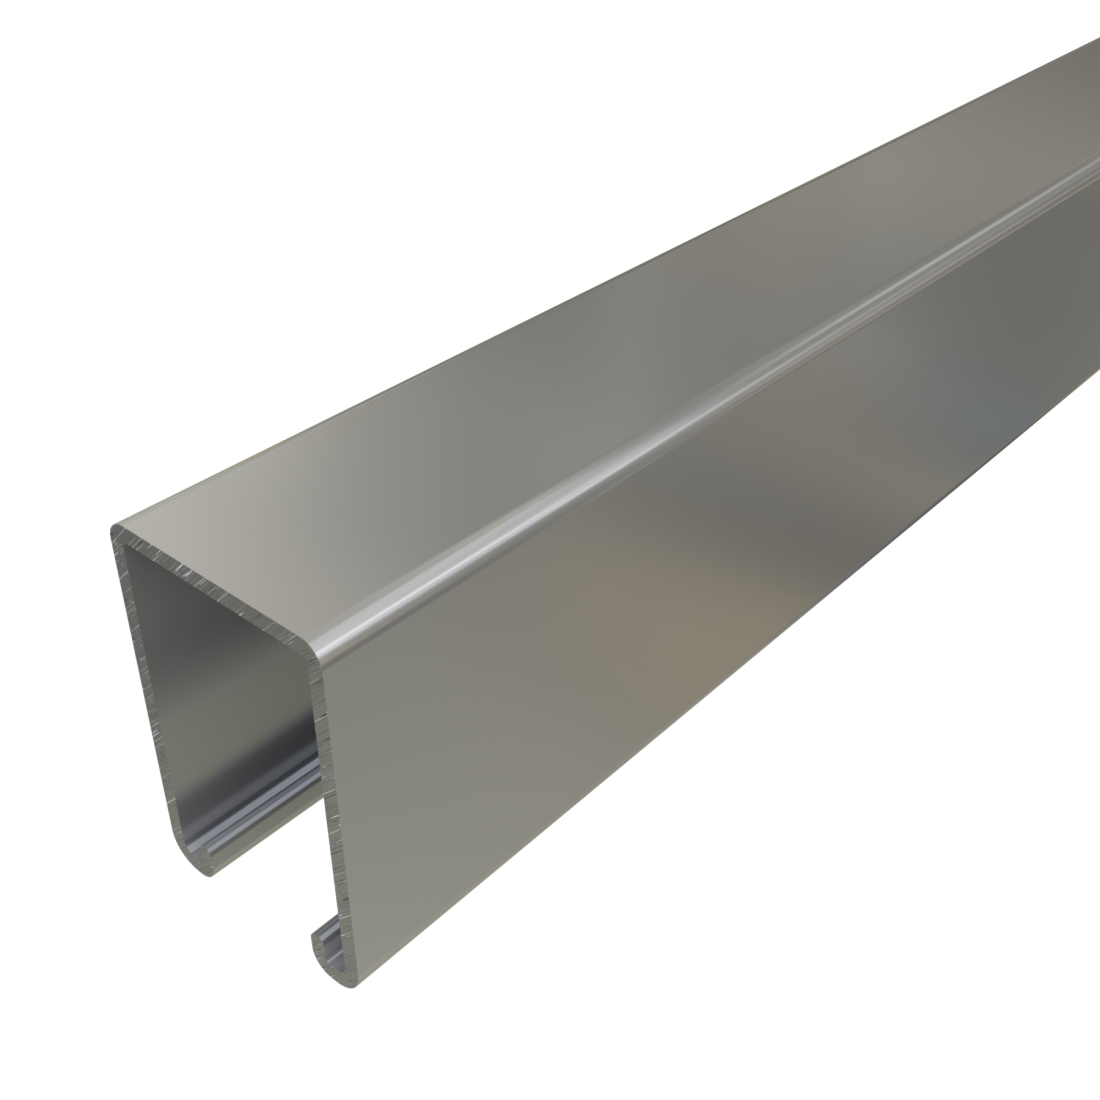 Unistrut P5500 - 1-5/8" x 2 7/16", 12 Gauge Metal Framing Strut, Solid